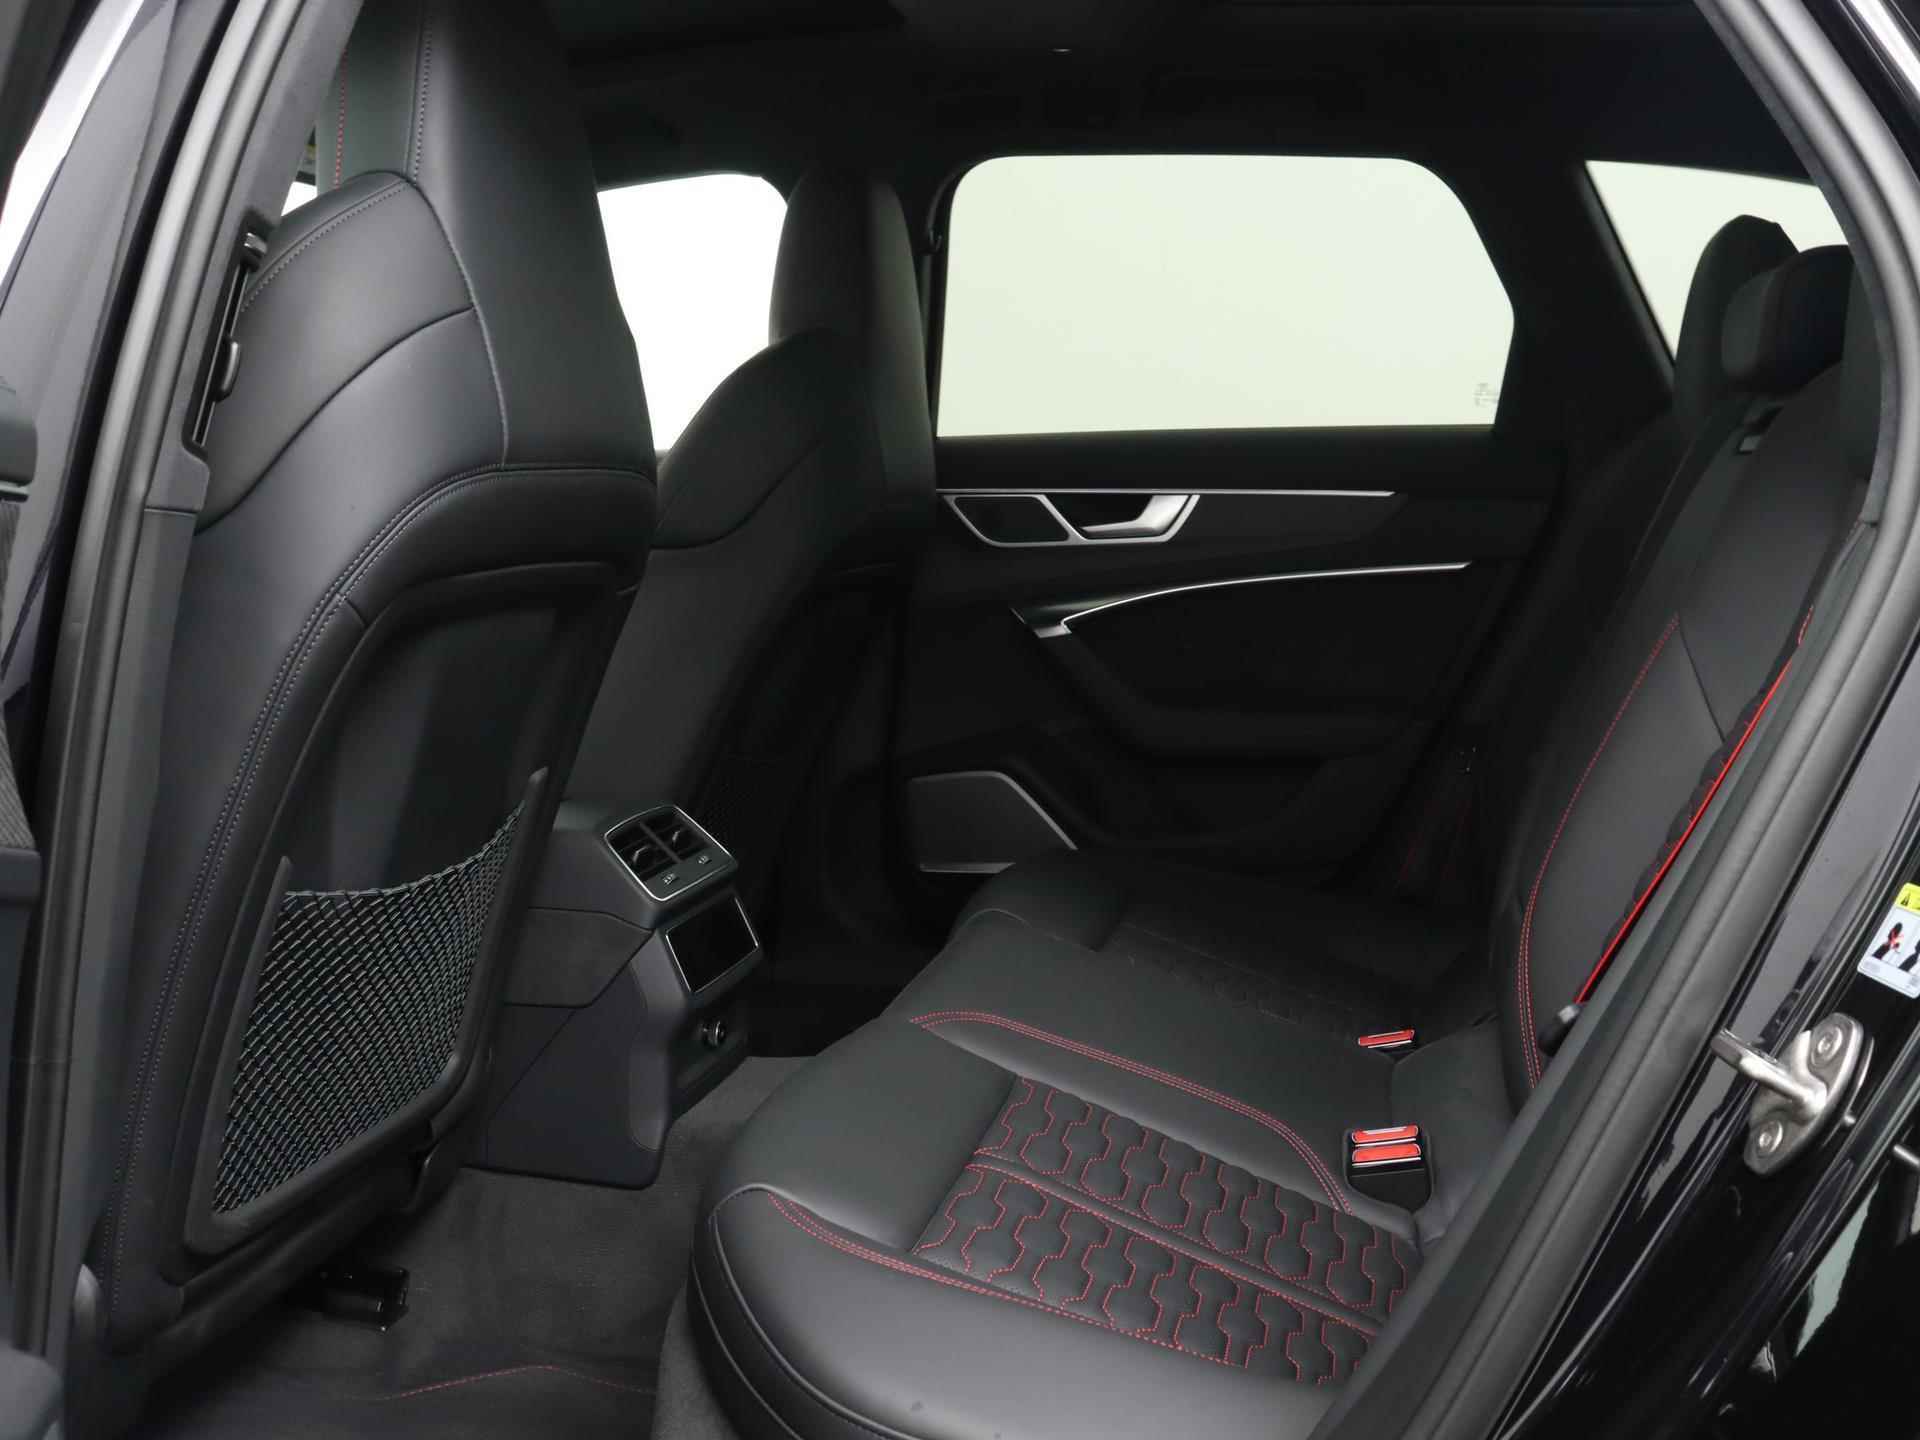 Audi RS6 TFSI quattro 600 PK | Head-up display | Bang & Olufsen Soundsystem | 22 inch lm velgen | RS Dynamic Pakket Plus | RS Design pakket Rood |Optiekpakket Zwart Plus | Panorama dak | RS Sportuitlaat | Keramische remschijven Rood | RS Sportonderstel Plus | Servosluiting deuren | Nu € 36.129,- ACTIEKORTING! | DIRECT LEVERBAAR! | NIEUWE AUTO! | - 18/35